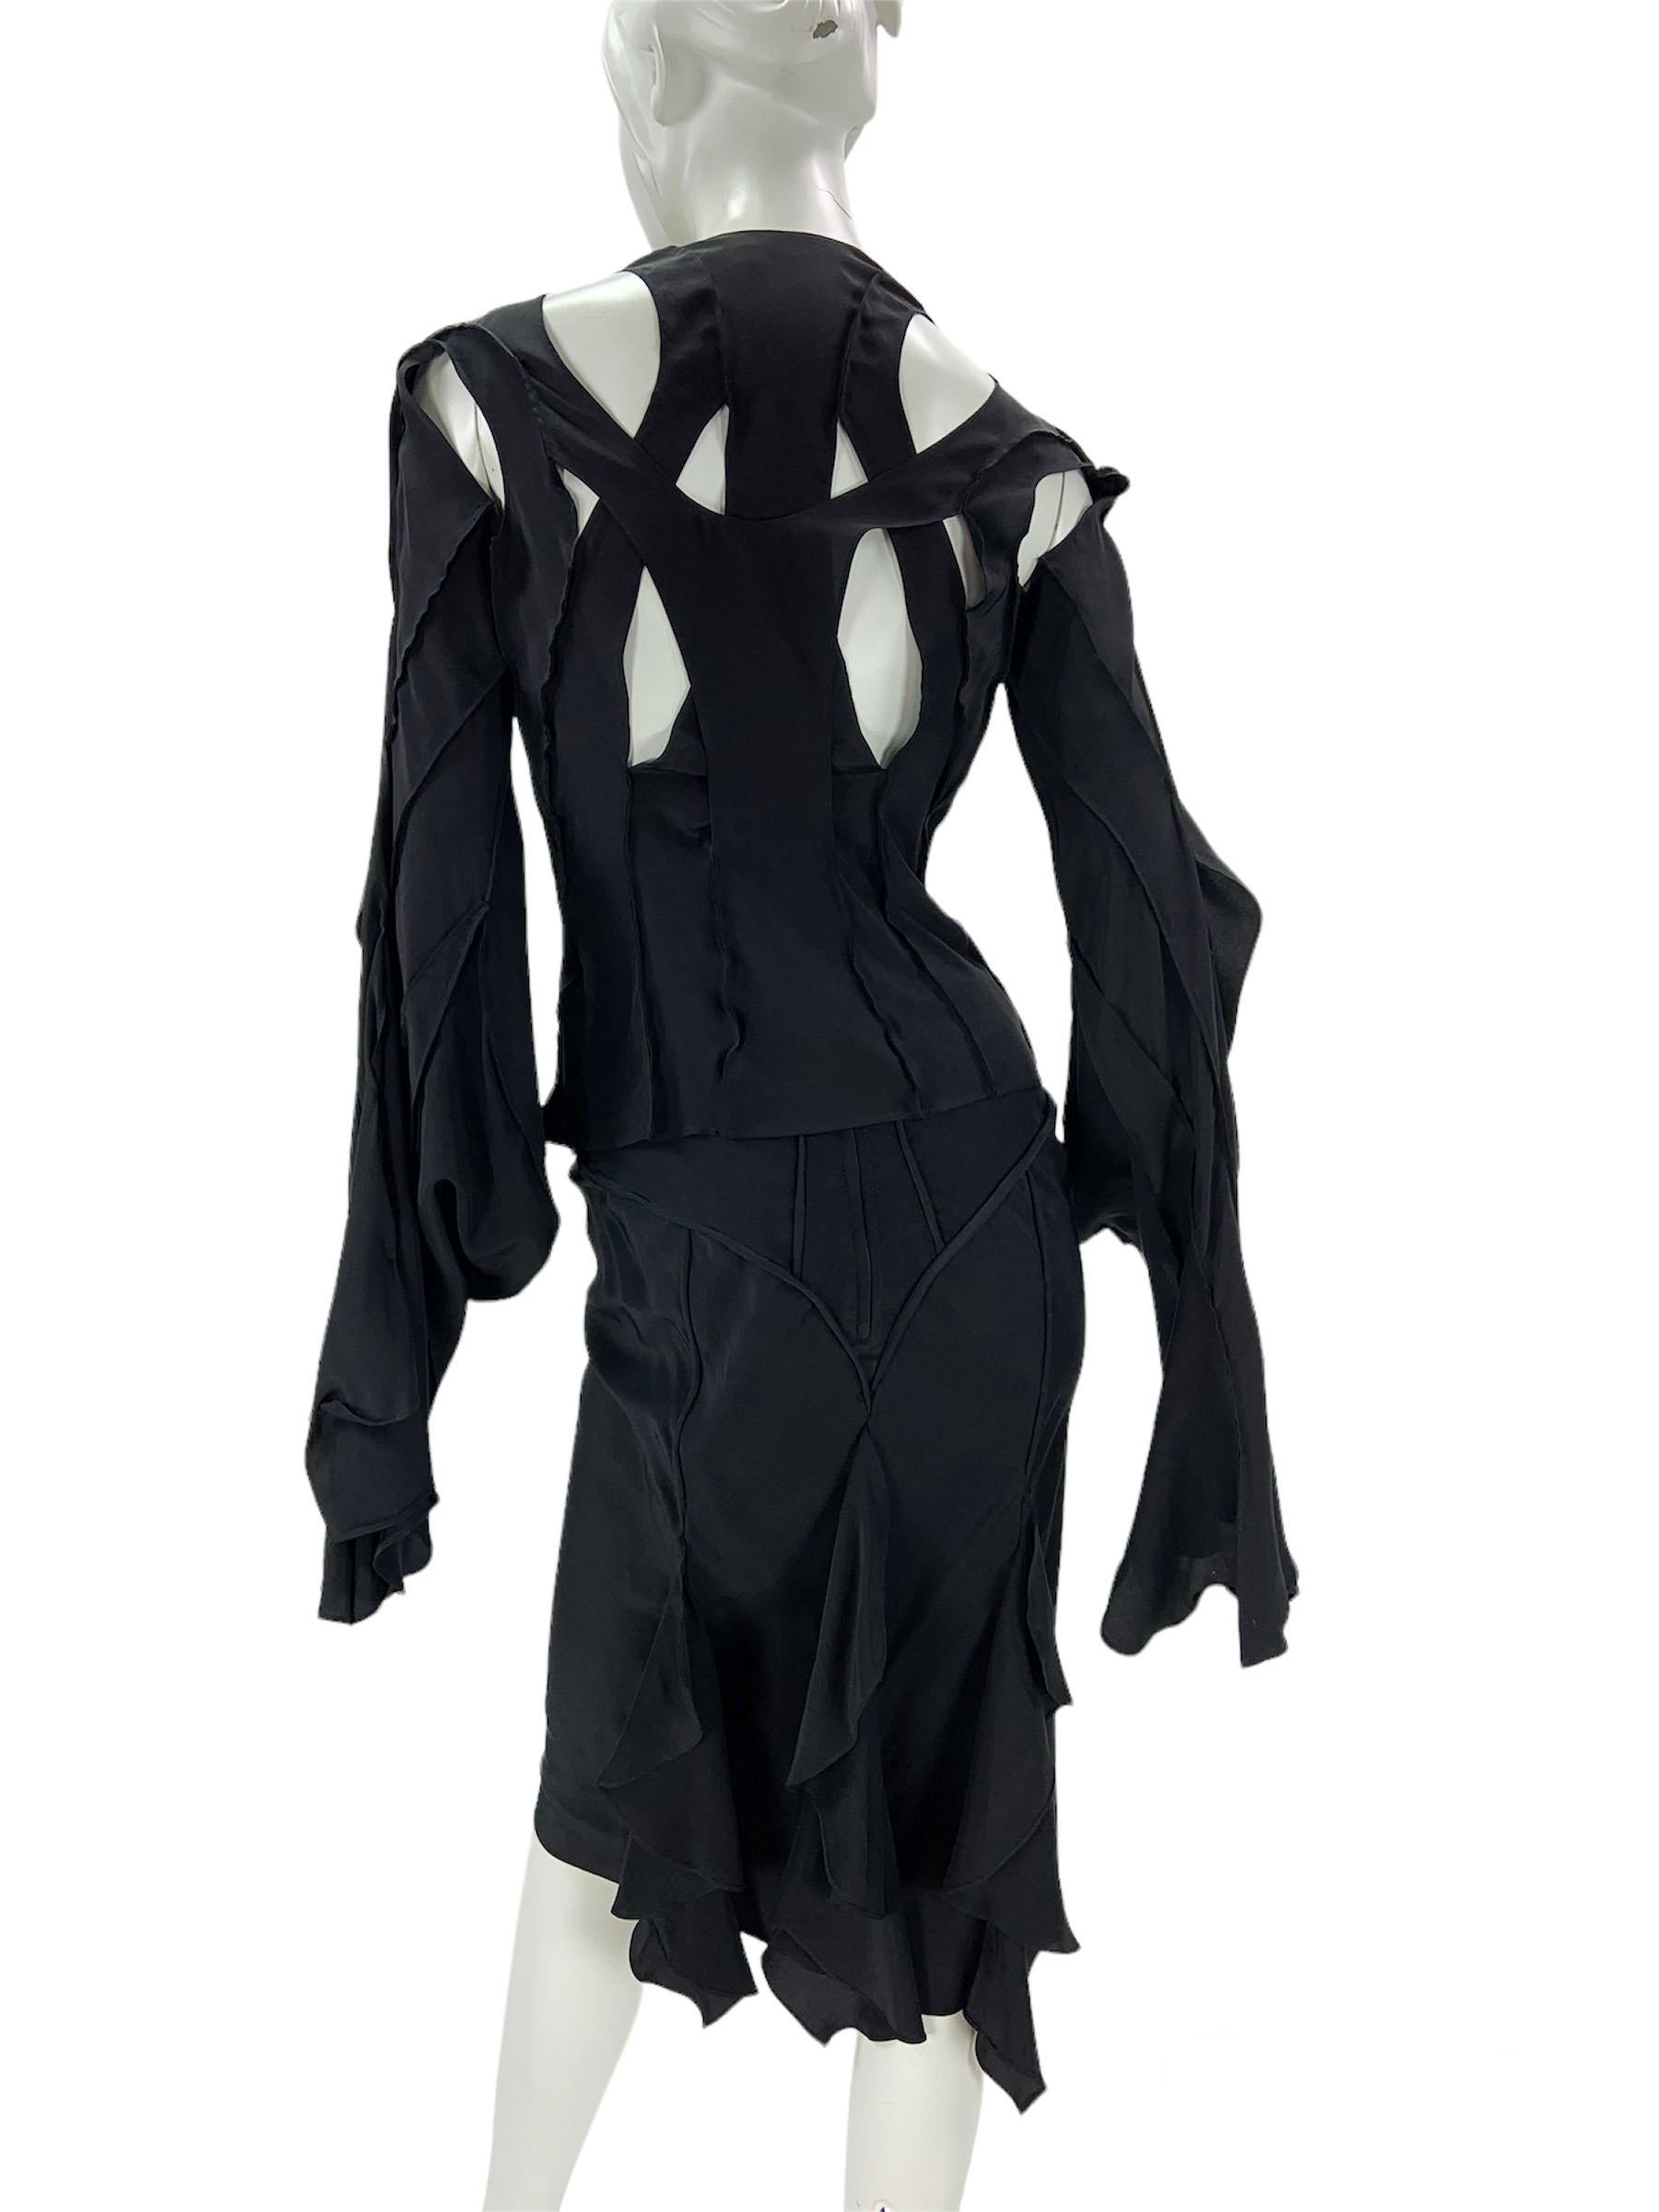 Women's Tom Ford for Yves Saint Laurent S/S 2003 Silk Black Skirt Suit French 38 - US 6 For Sale